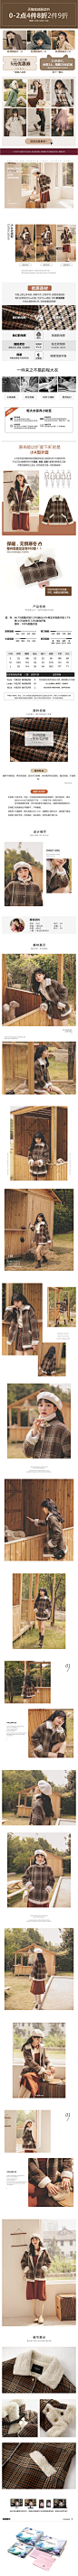 格子加绒呢子大衣2019冬季新款女装韩版流行宽松复古洋气毛呢外套-tmall